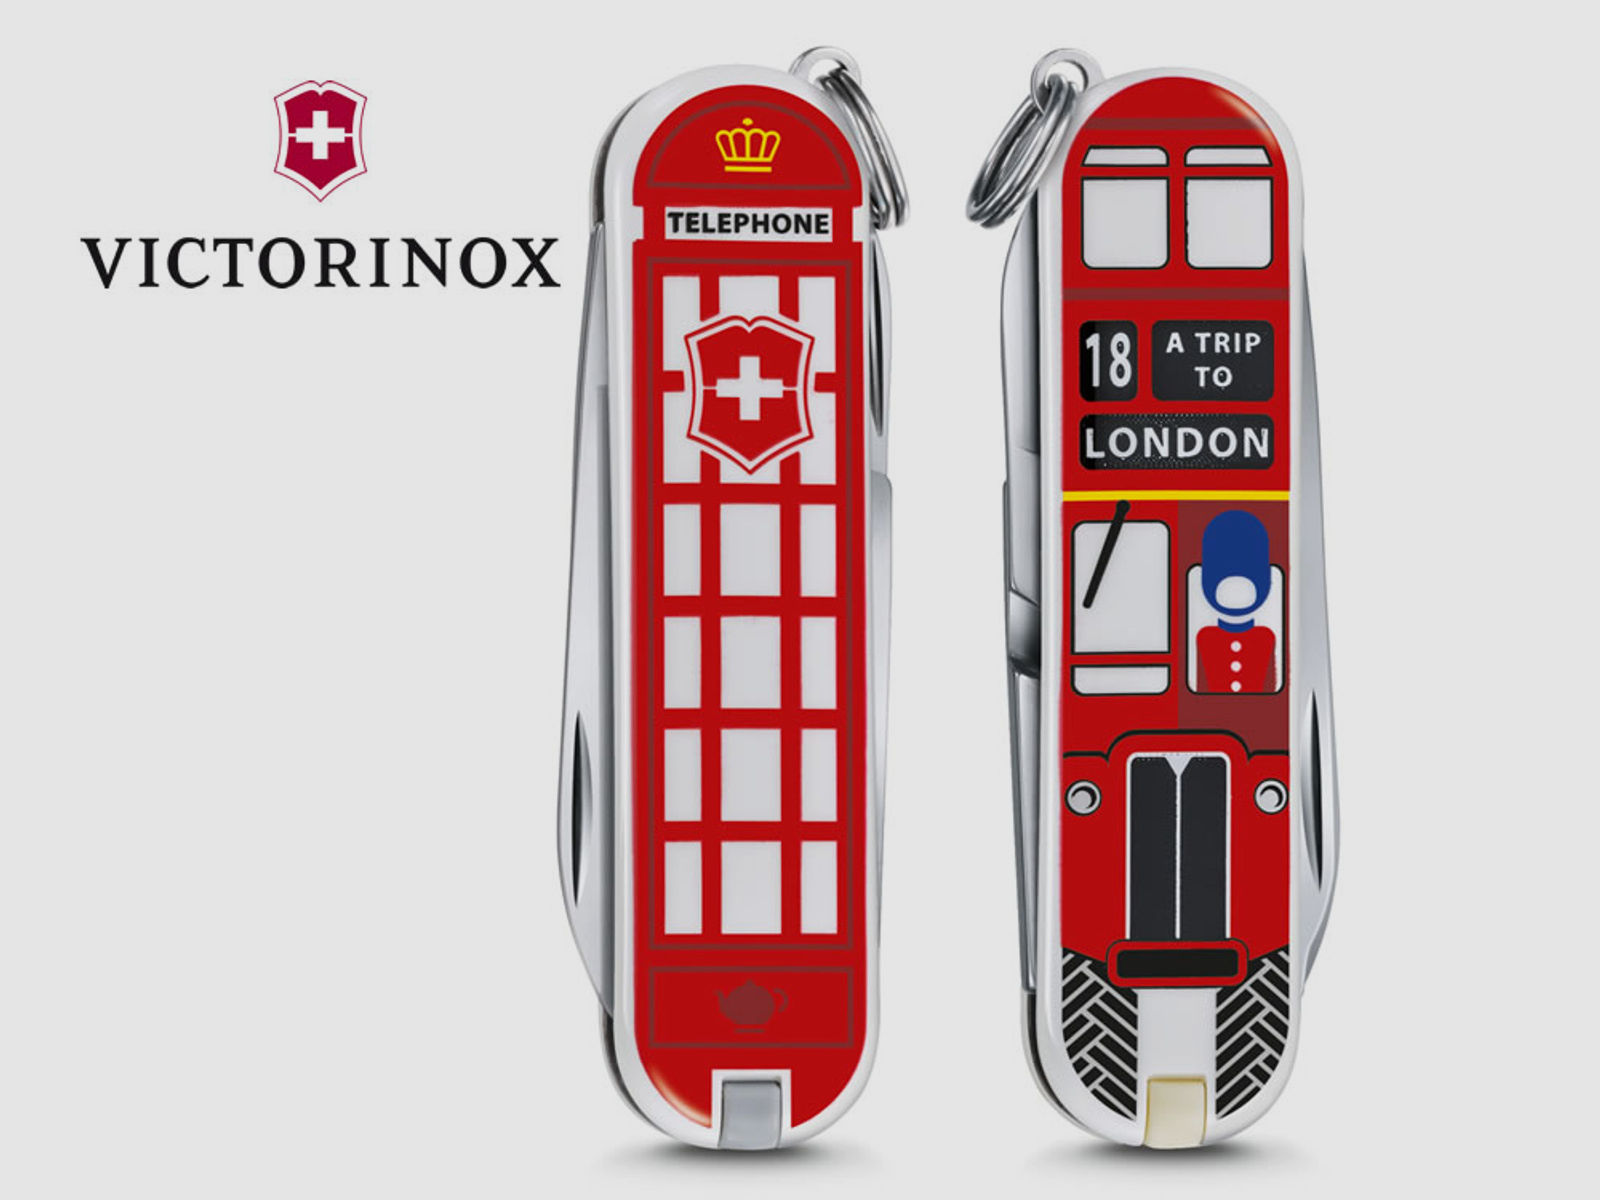 VICTORINOX Taschenmesser LONDON, limitided edition WORLD PLACES, 7 Funktionen, Schweizer Taschenmesser